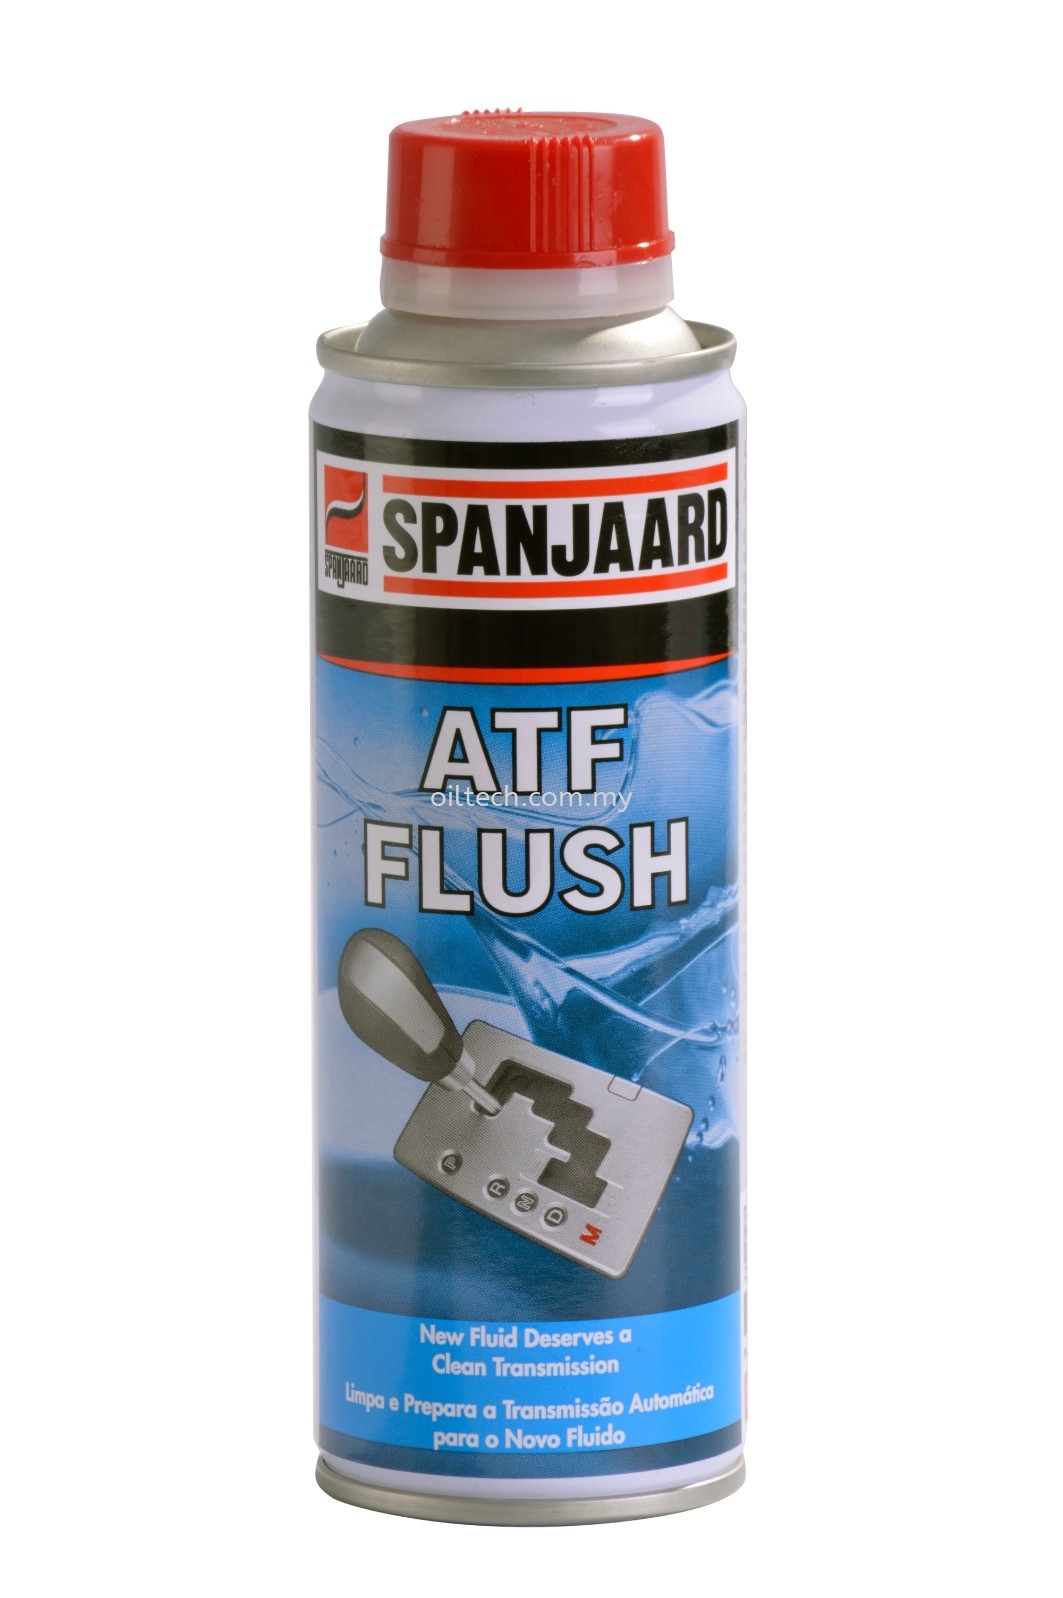 ATF Flush - Spanjaard Malaysia